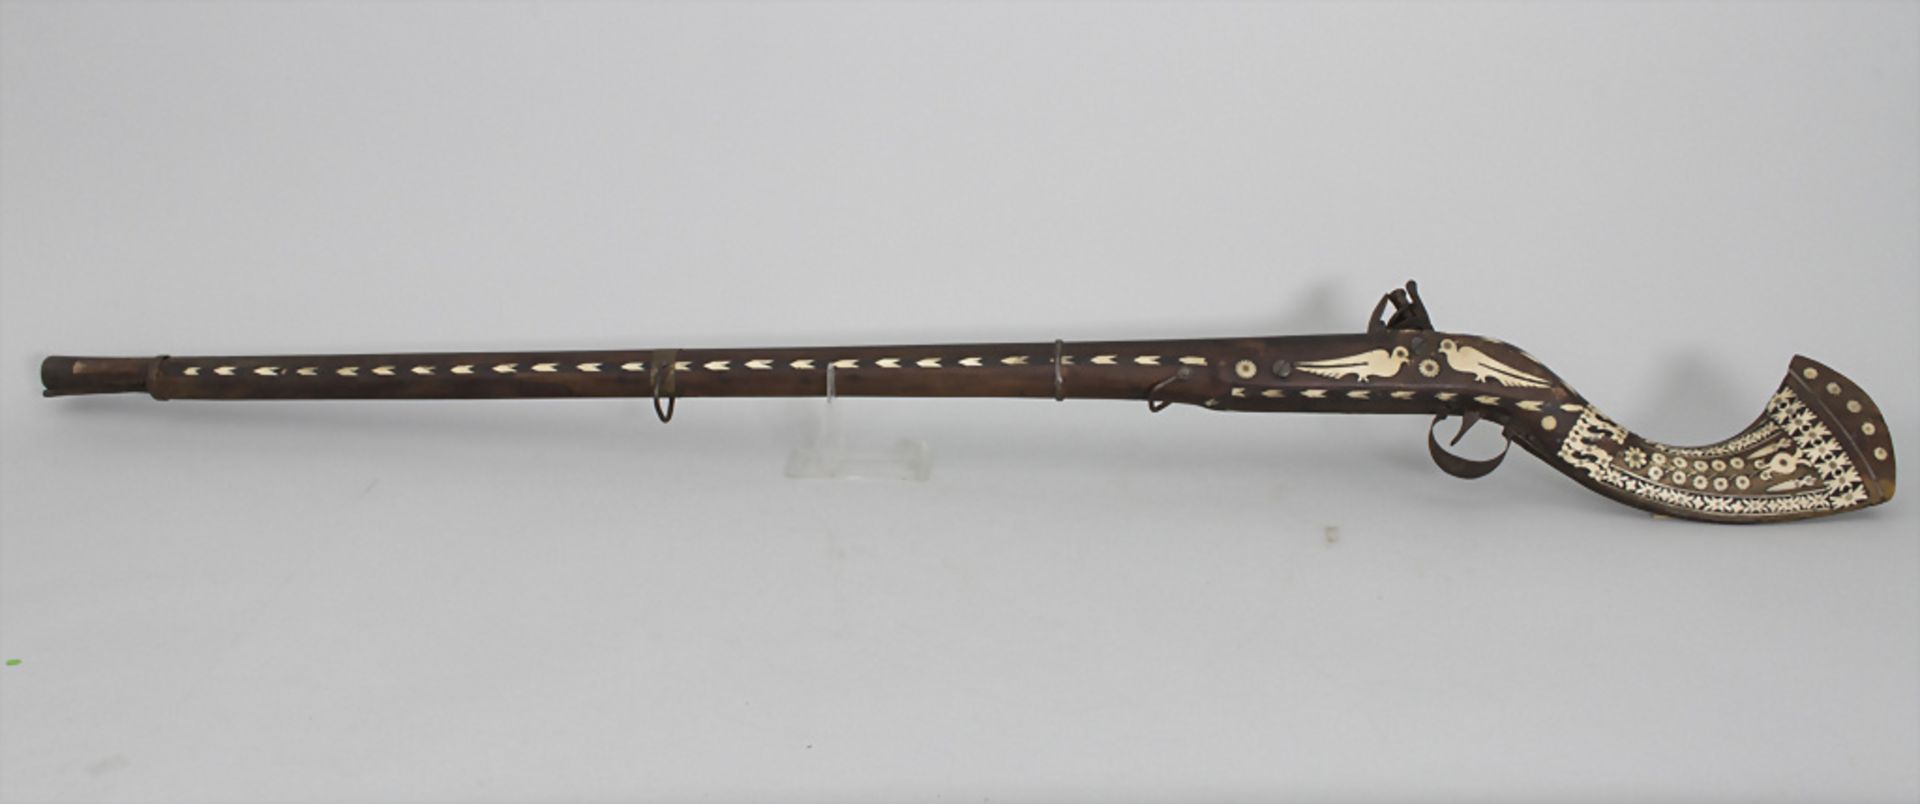 Steinschlossgewehr Vorderlader / A flintlock rifle, deutsch, 18. Jh. - Image 5 of 8